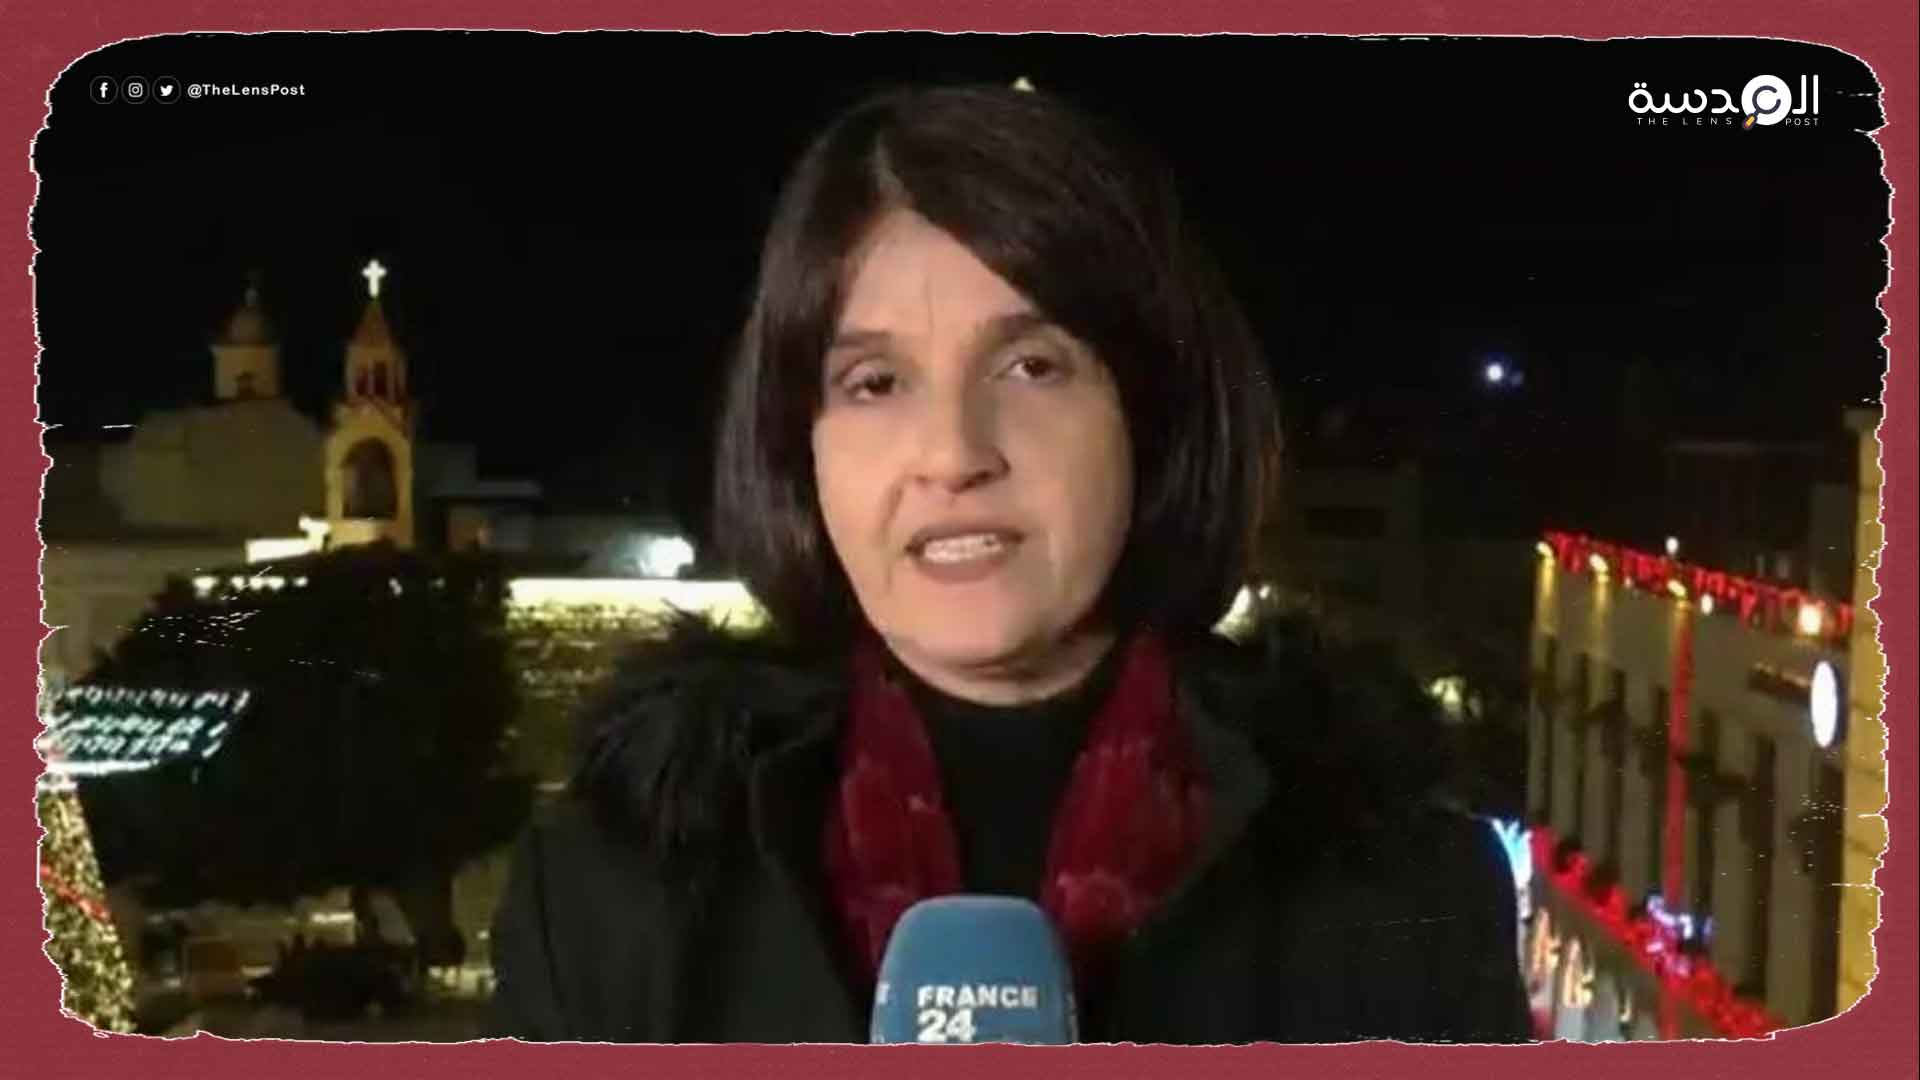 لاستخدامها لفظ "شهيد".. "فرانس 24" تحقق مع مراسلة فلسطينية بتهمة معاداة السامية